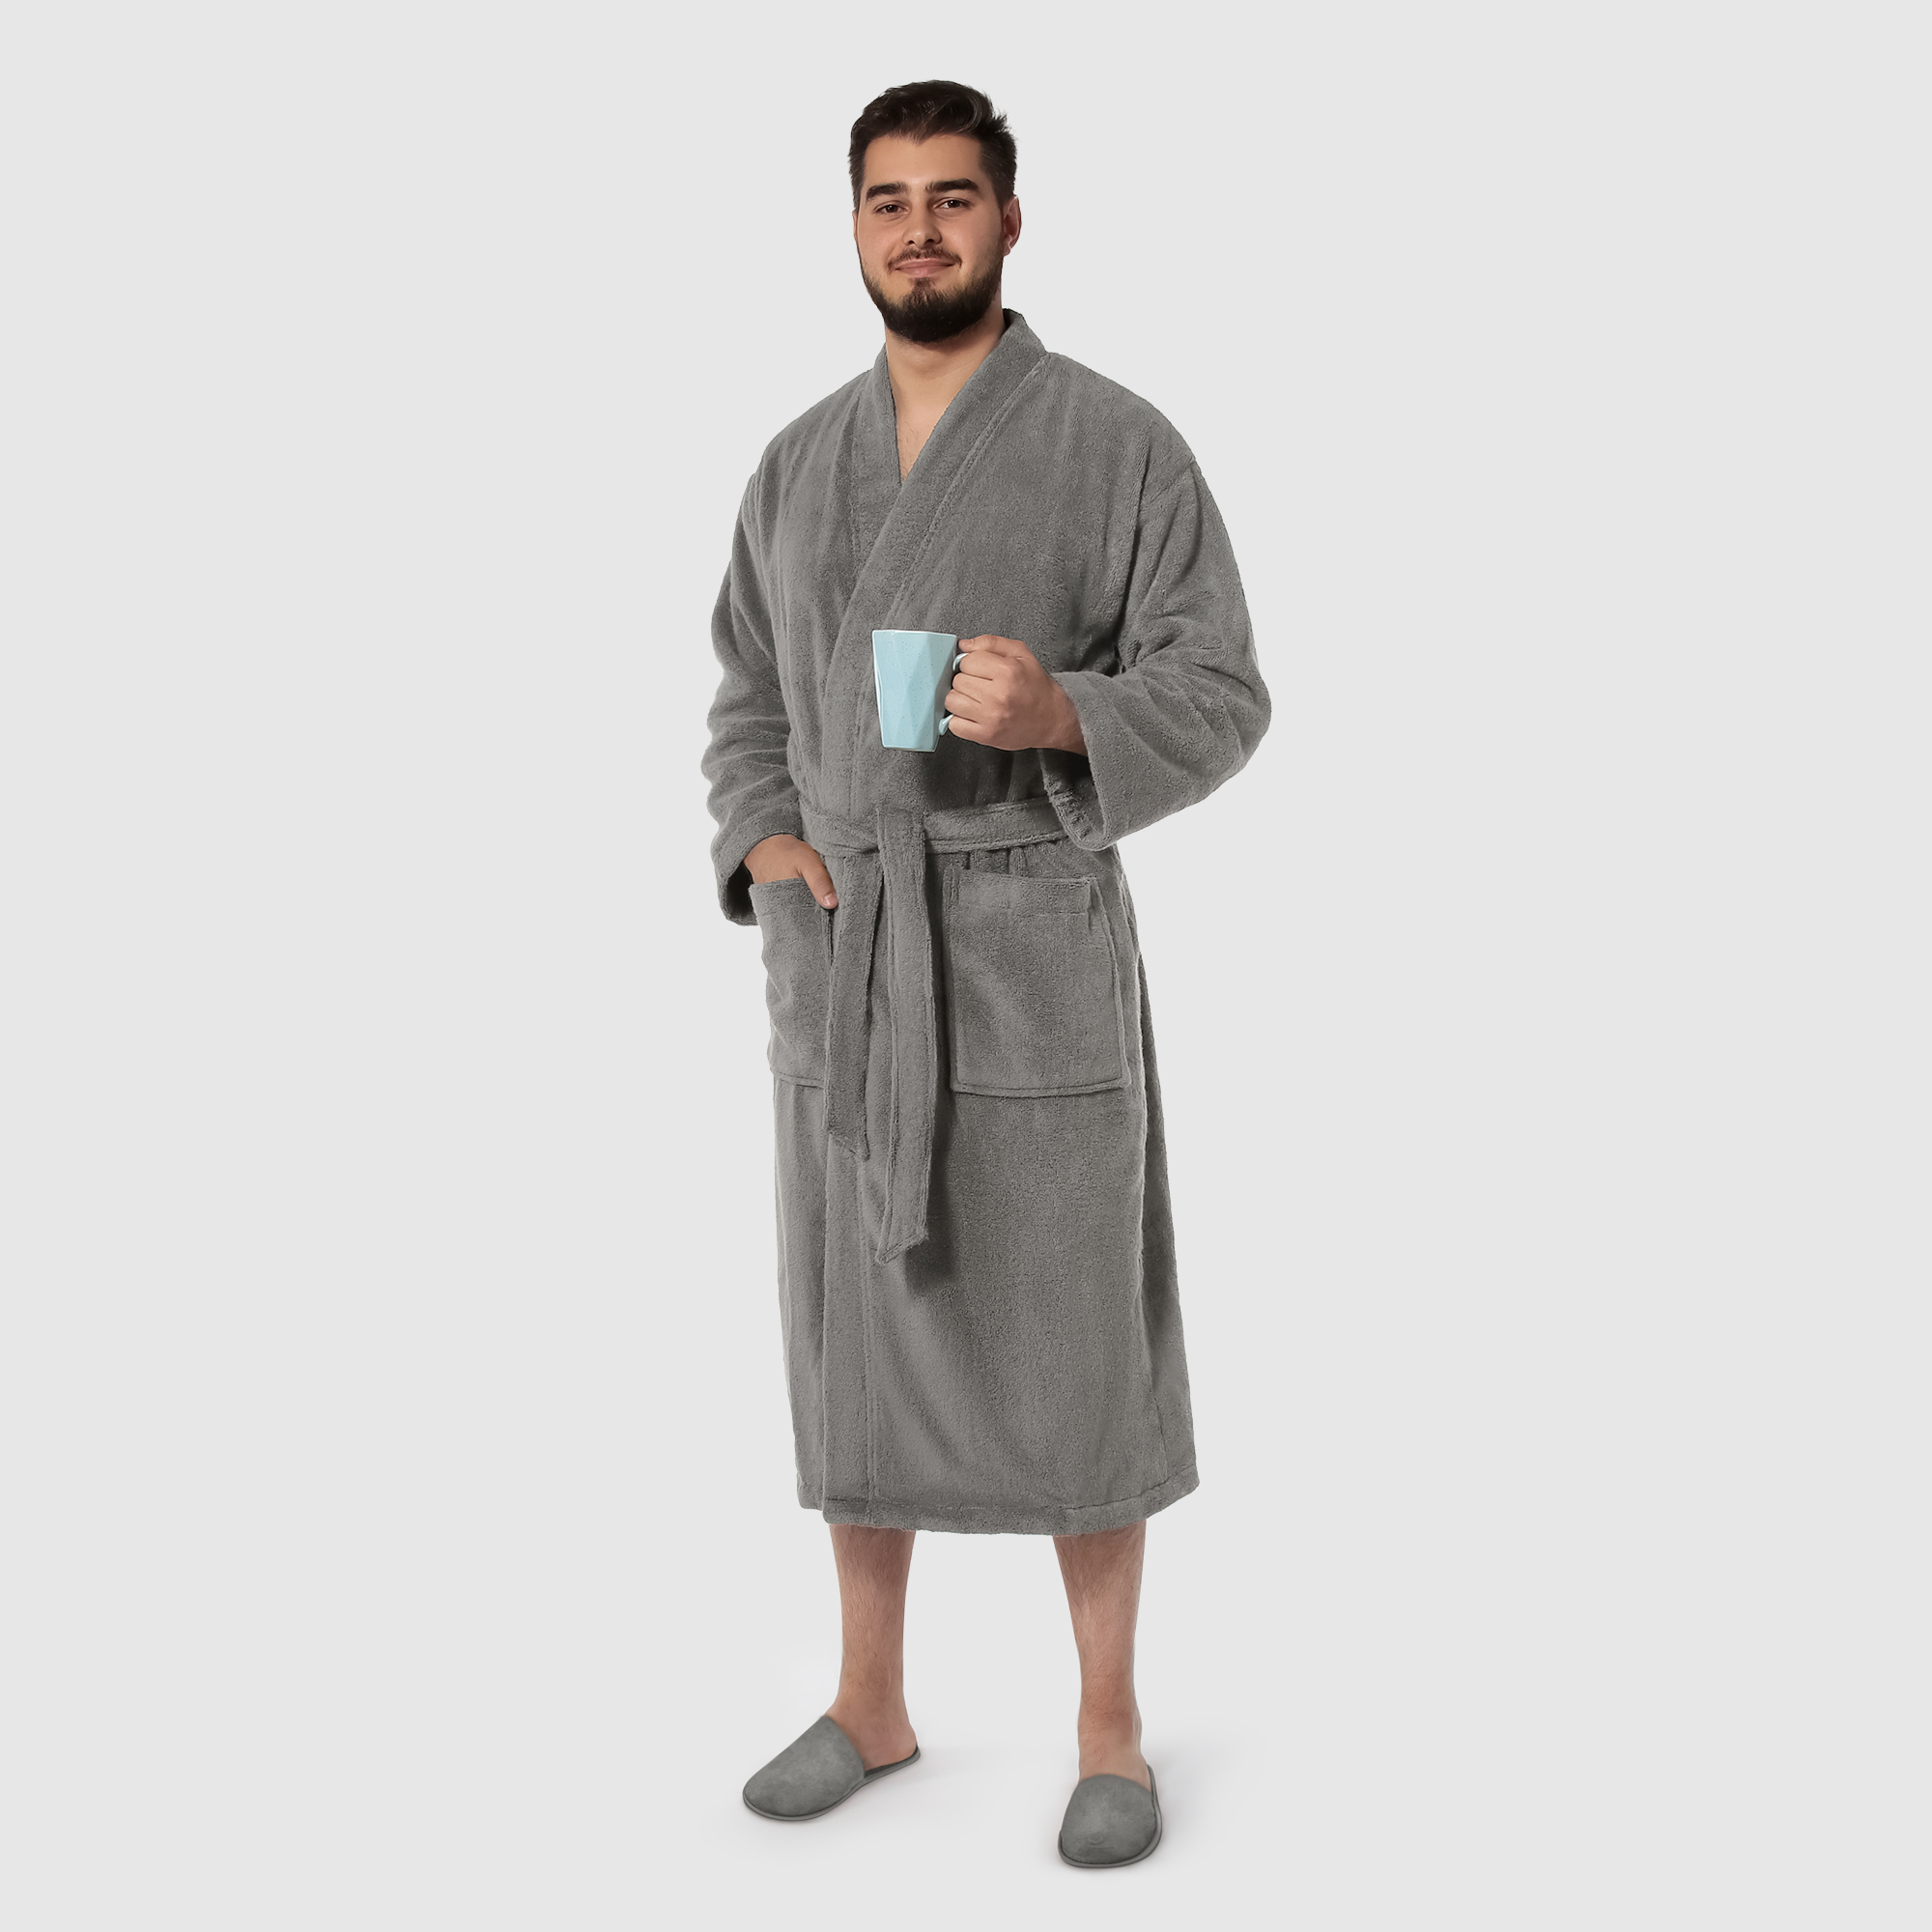 Мужской халат Maisonette Parla светло-серый S халат мужской asil sauna brown xl махровый с капюшоном